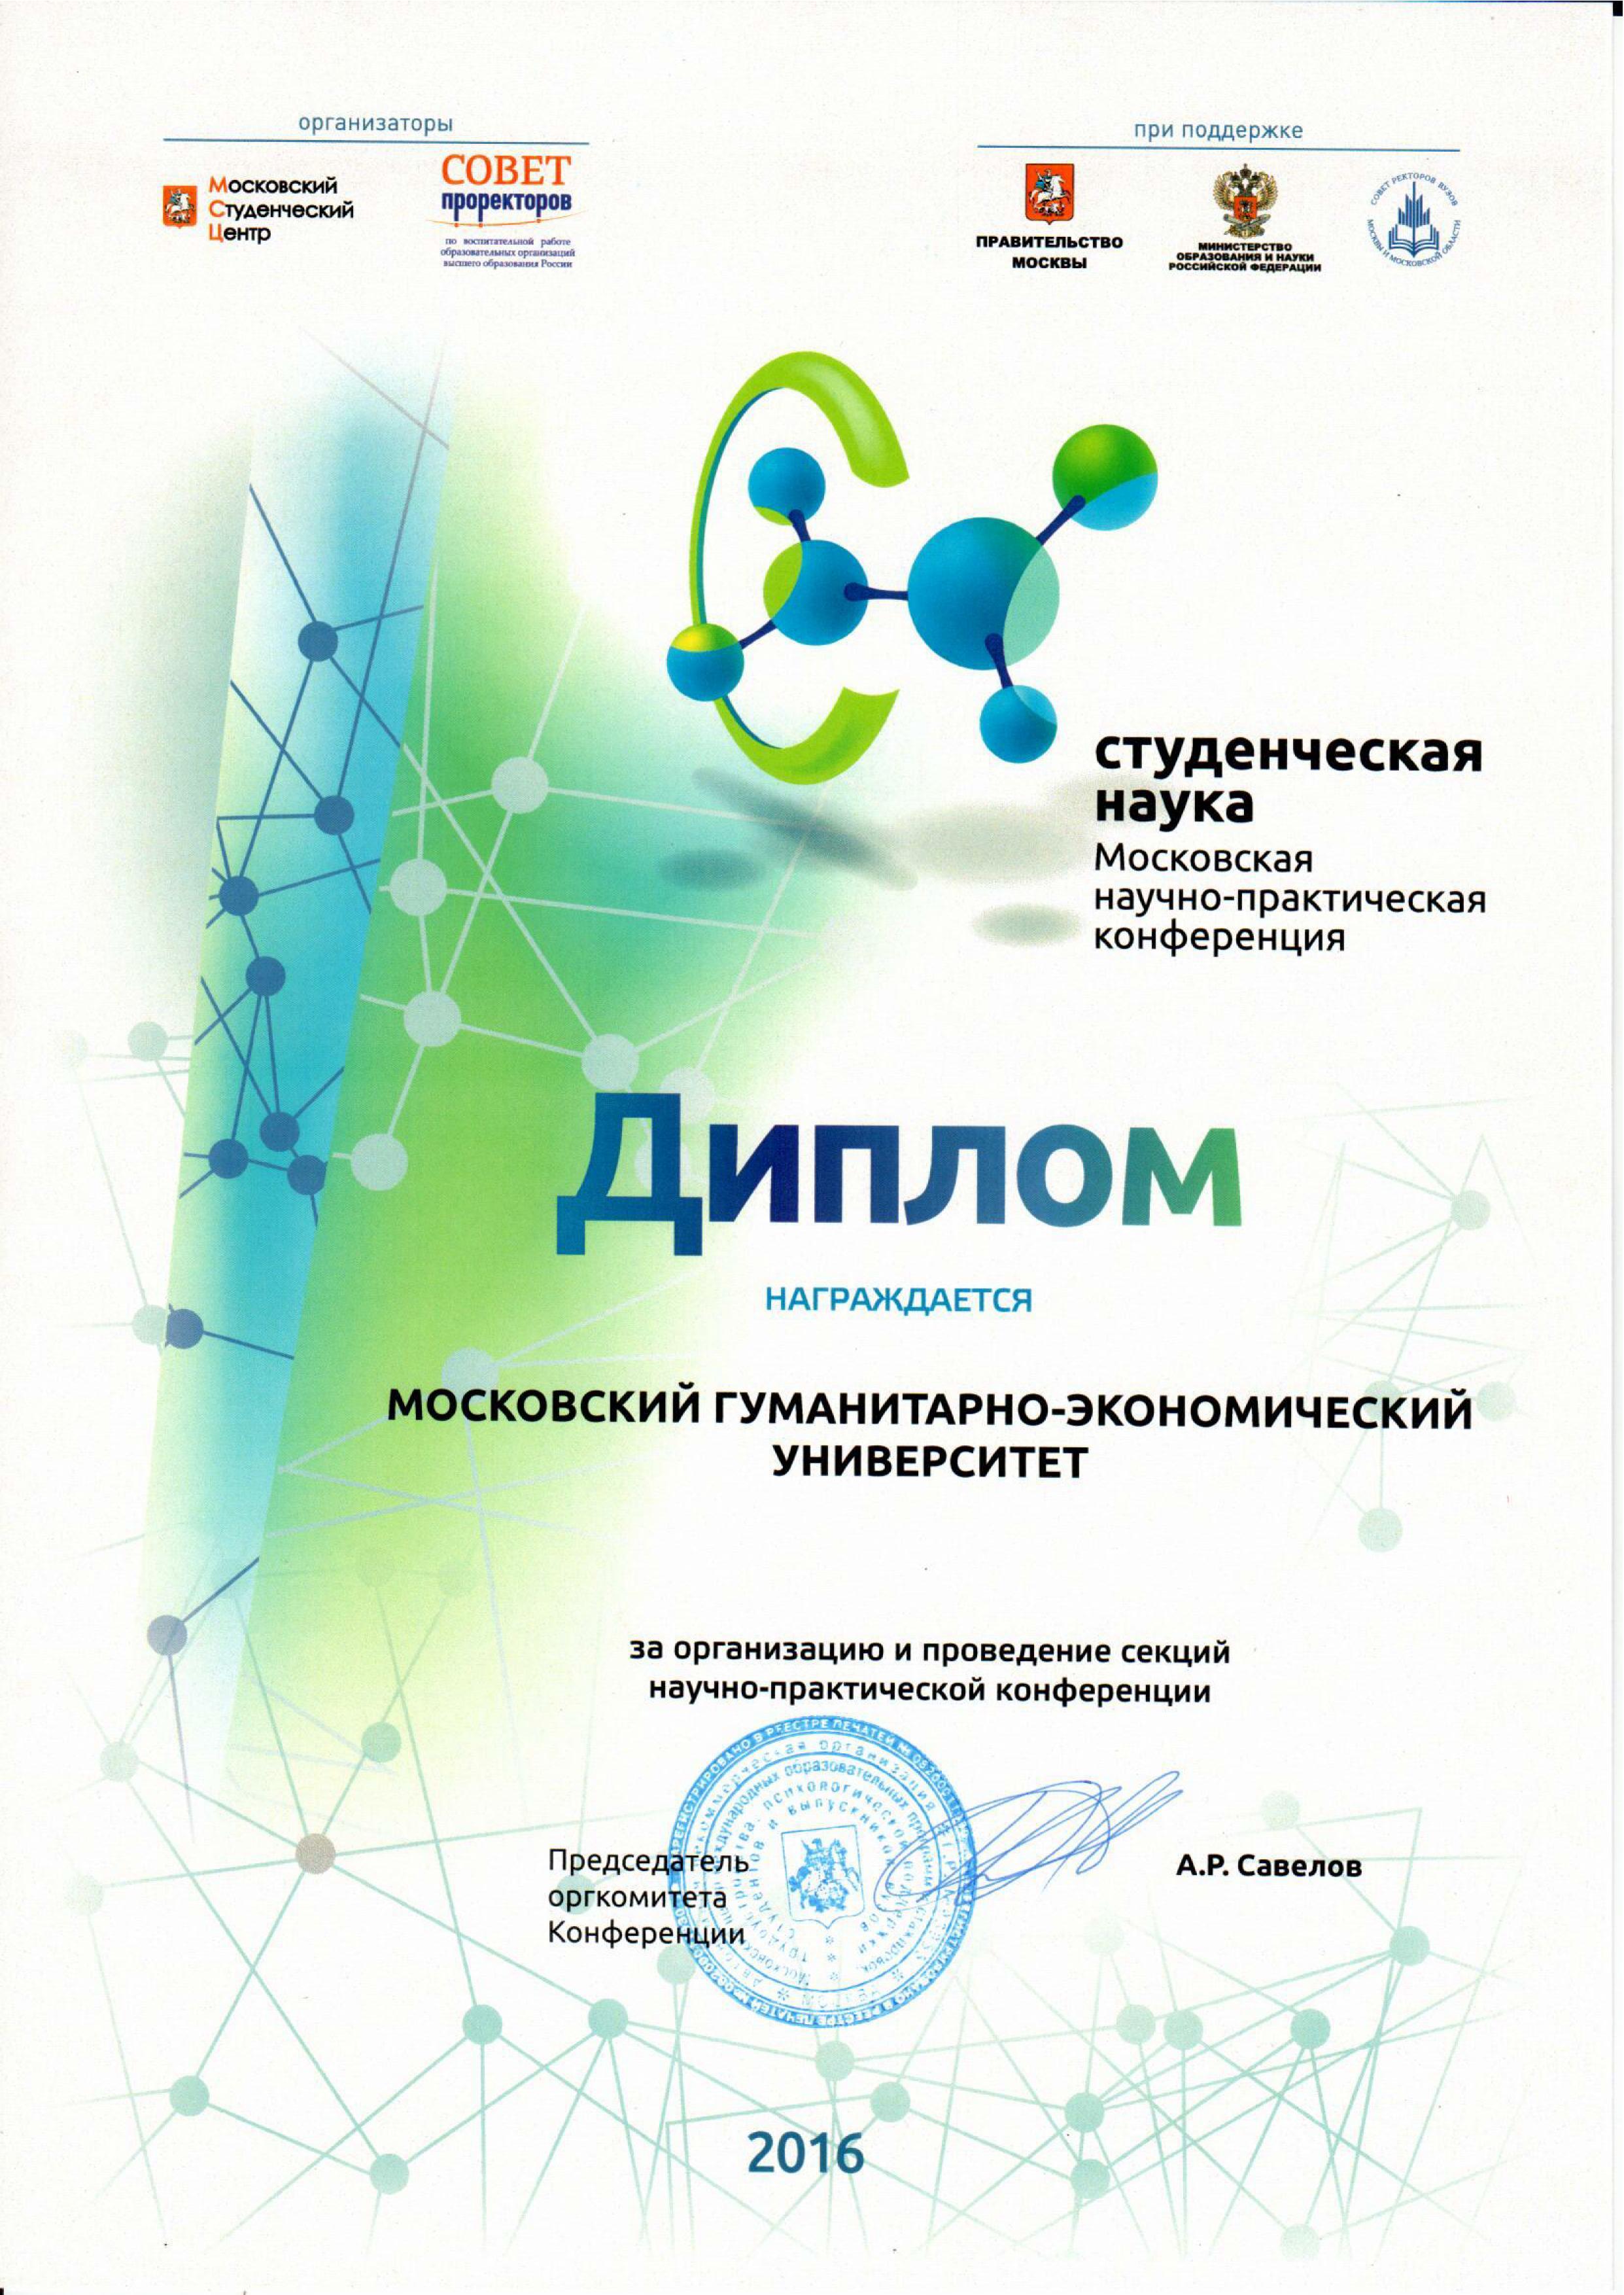 Диплом Московской научно-практической конференции МГЭУ